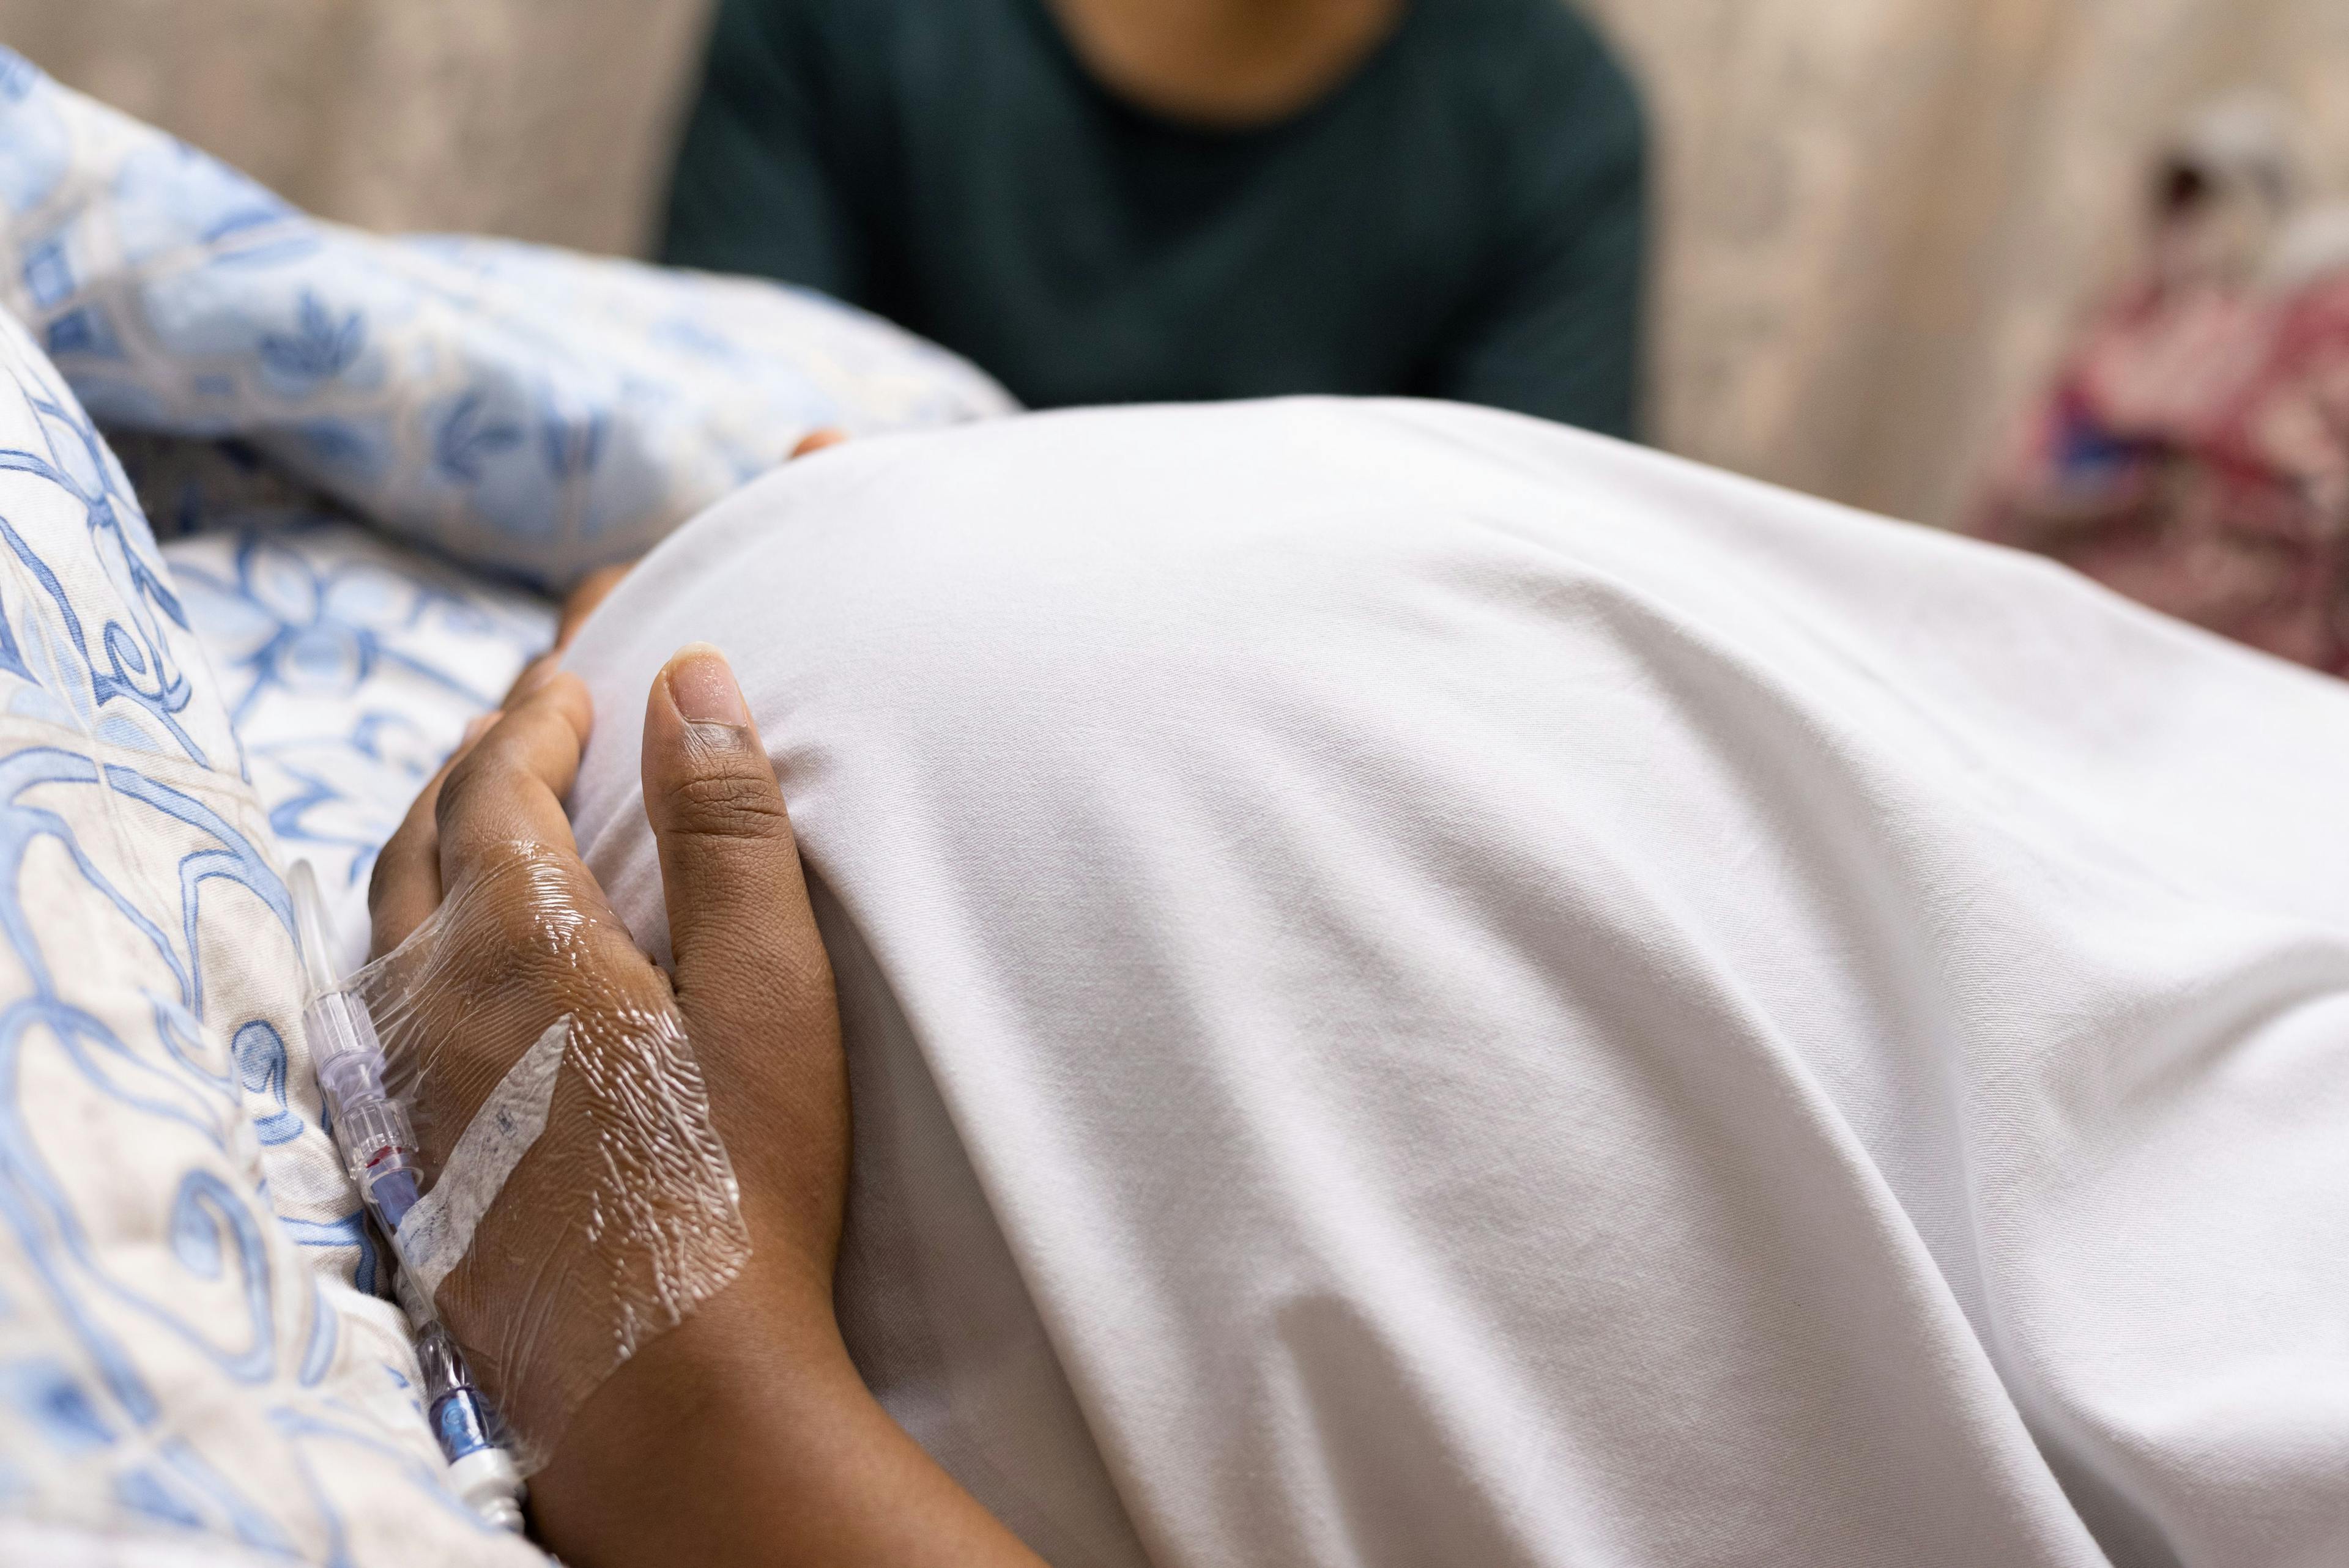 Do racial disparities affect postpartum pain management?